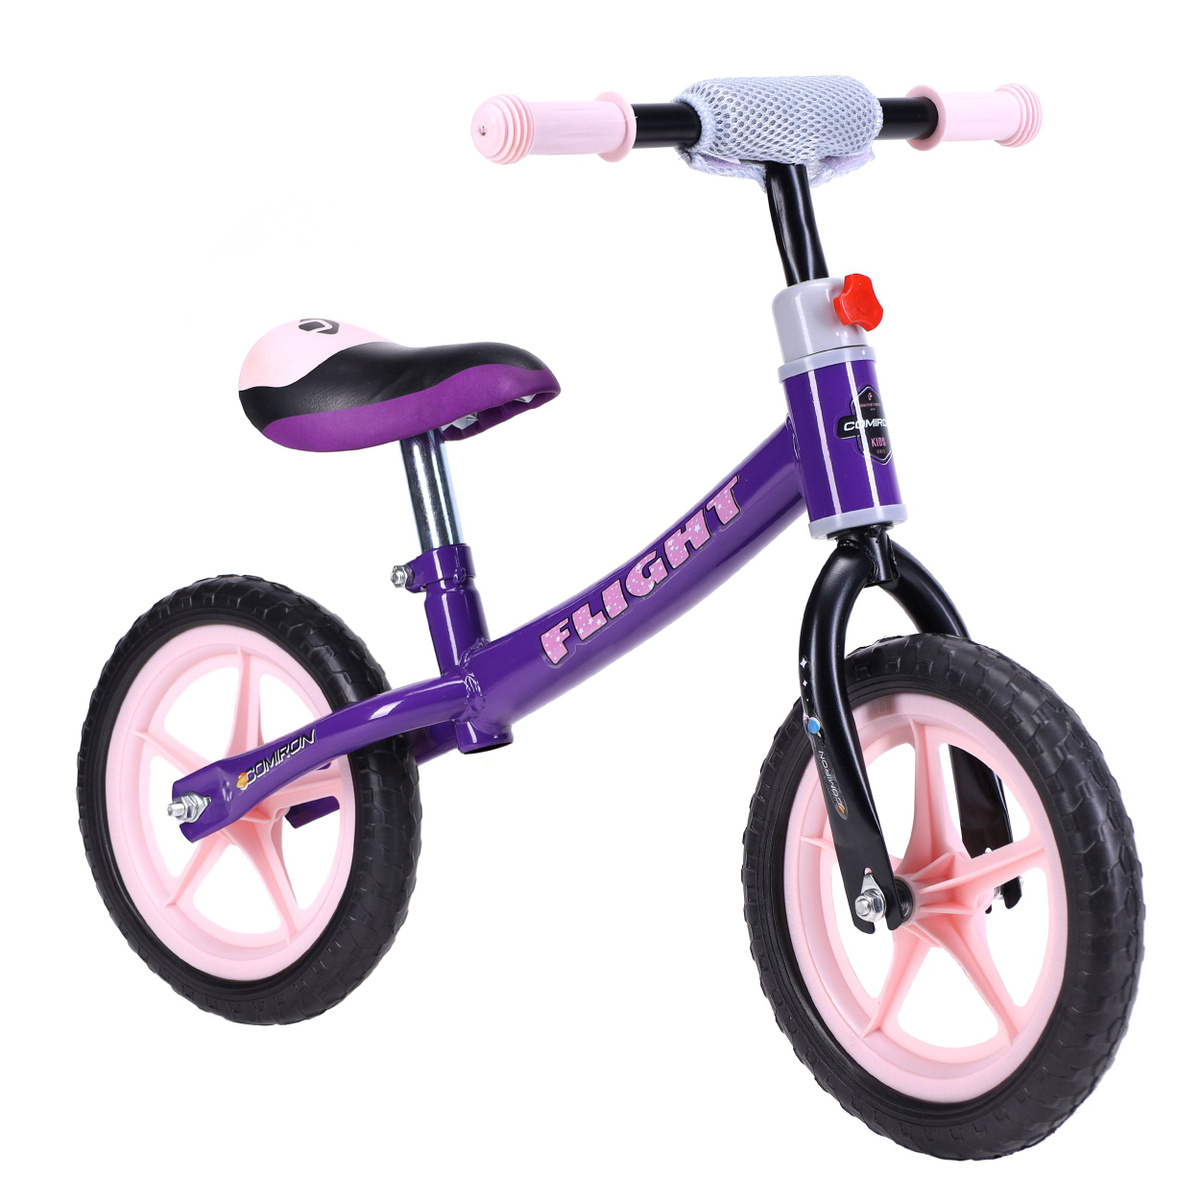 беговел; велобег; велокат; ранбайк; велосипед для малыша; велосипед без педалей;